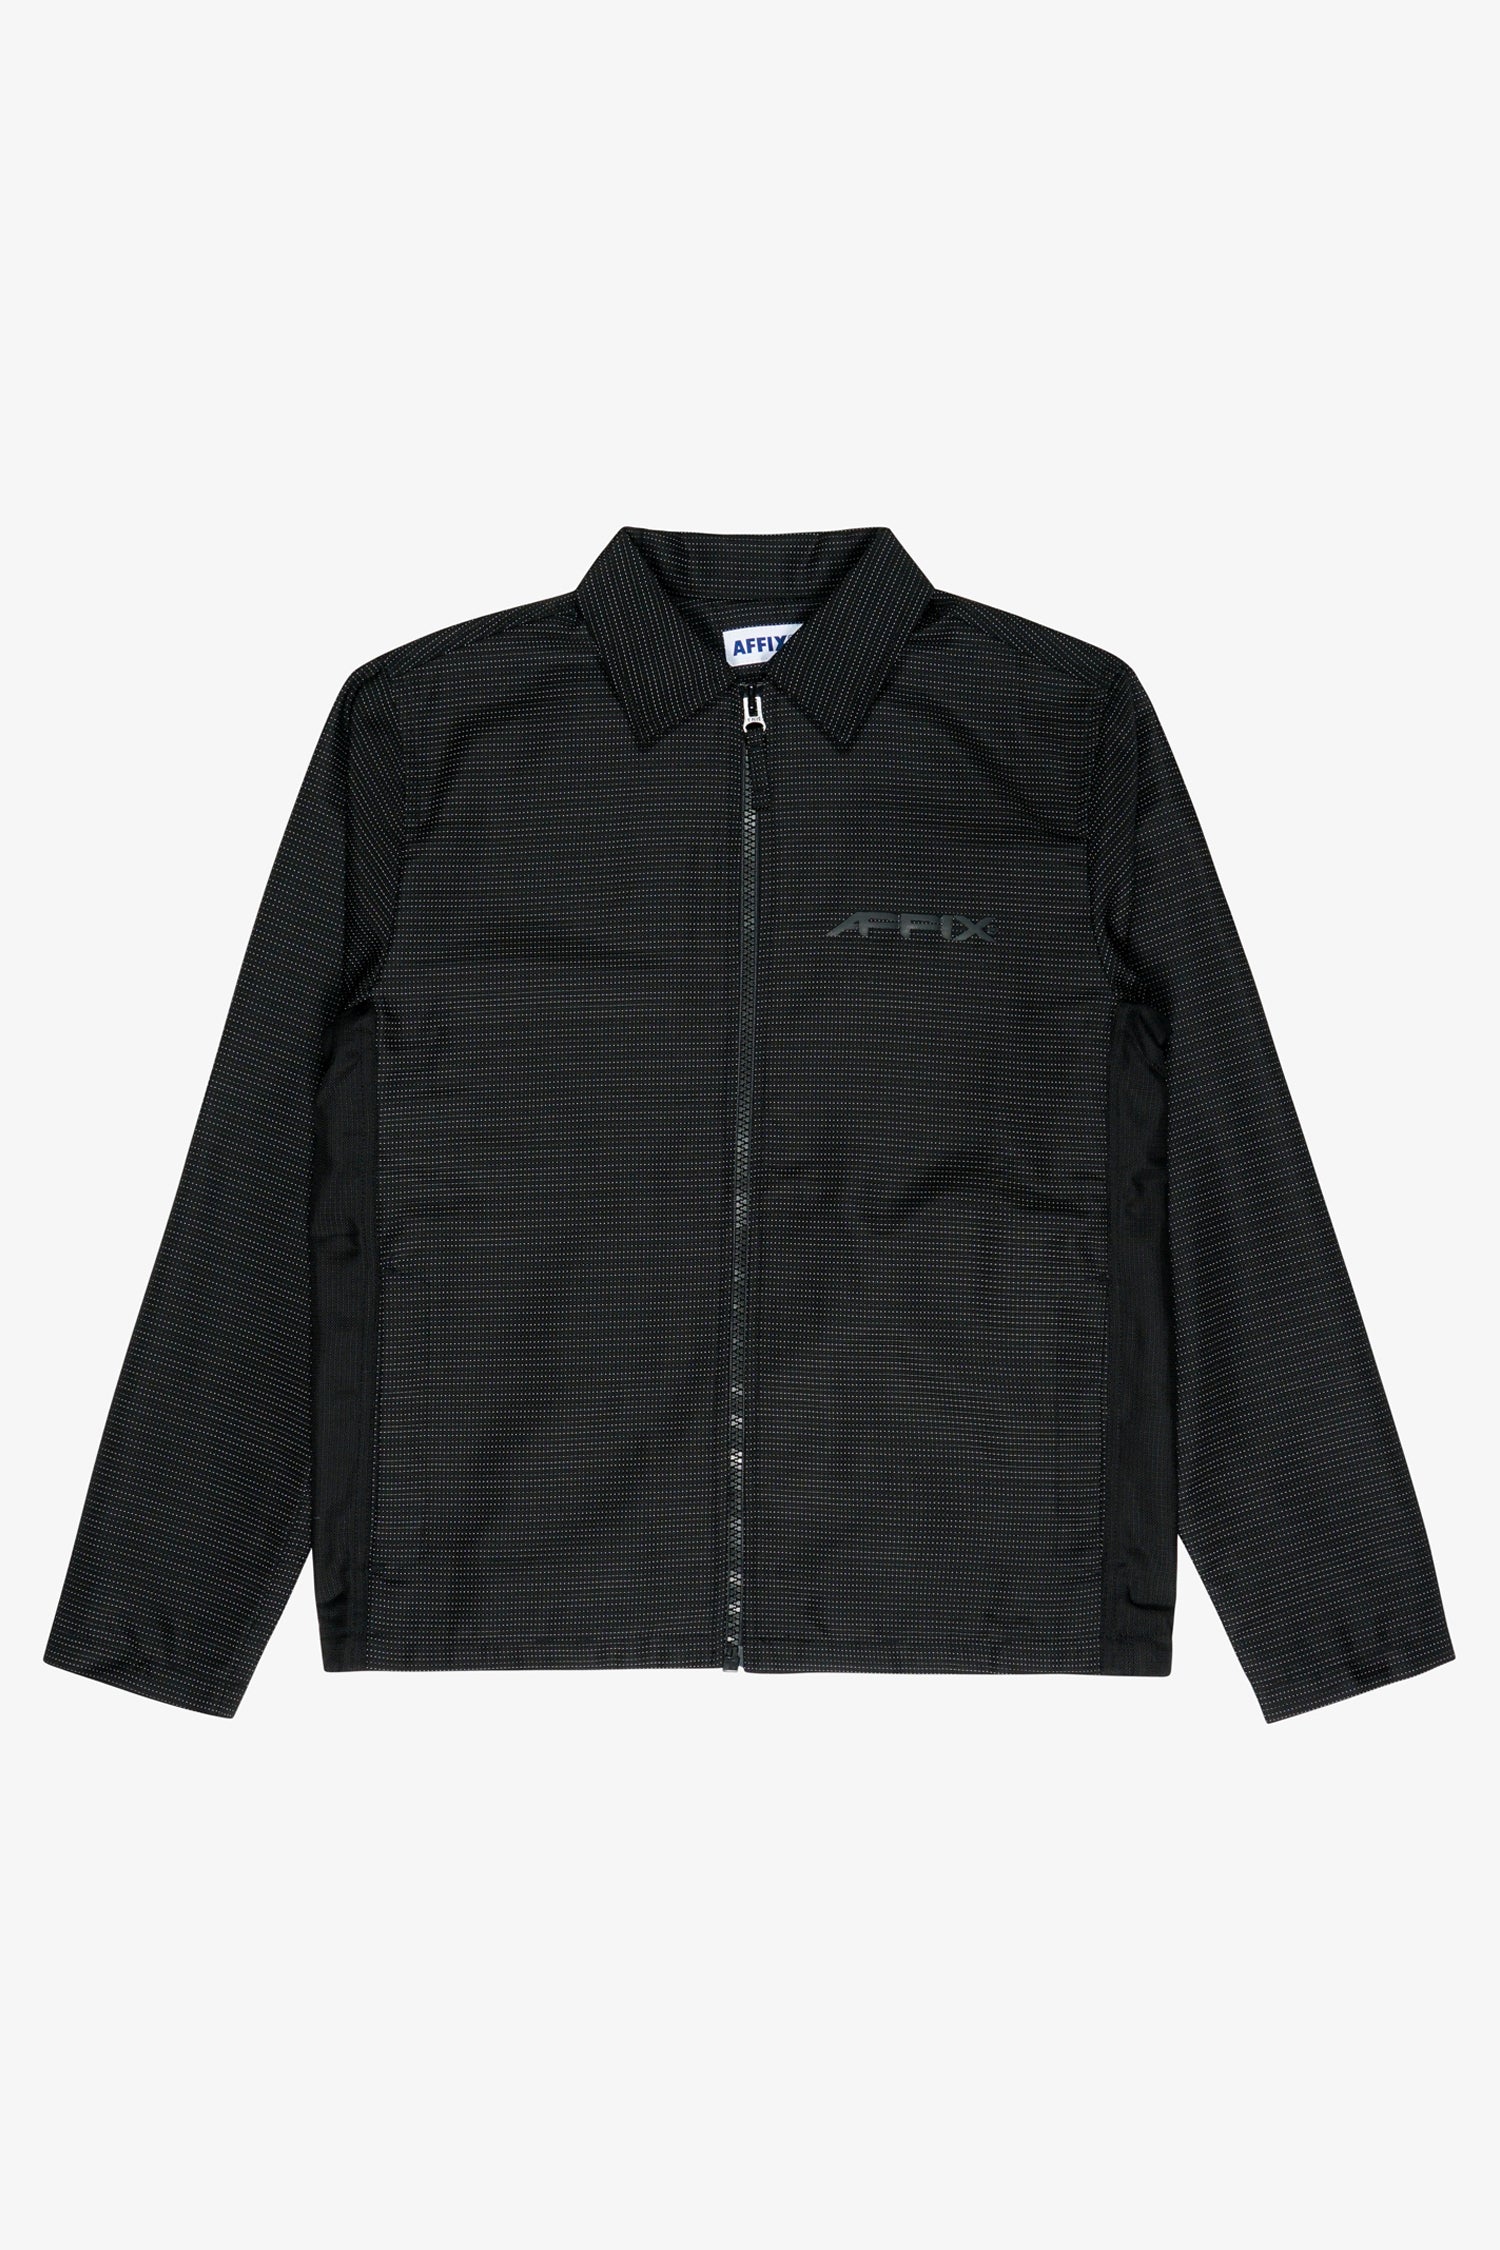 Selectshop FRAME - AFFIX Visibilty Coach Jacket Outerwear Dubai